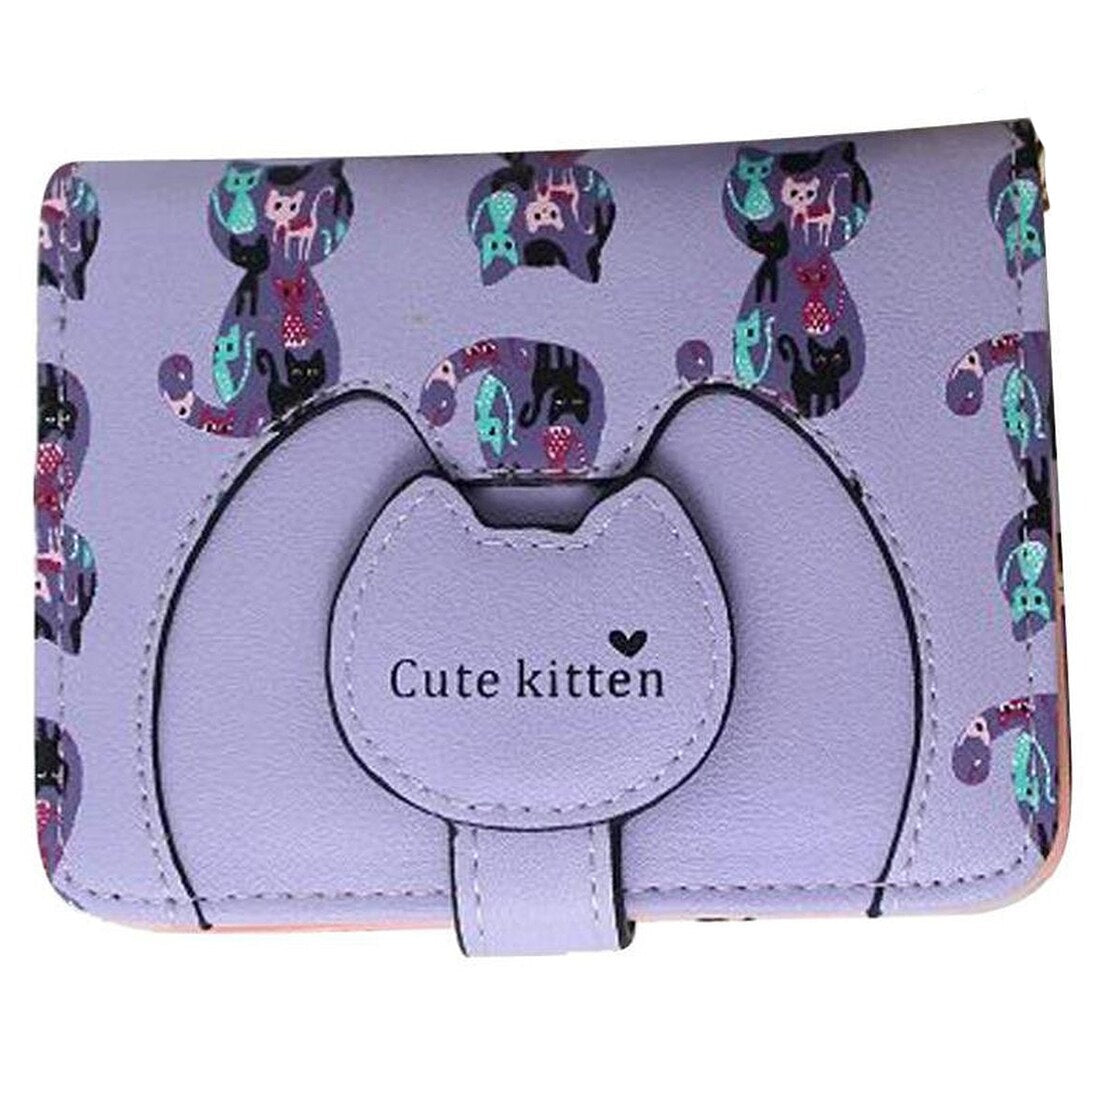 Ctue Women Cat Purse Short Wallet Bags Handbags Card Holder - ebowsos